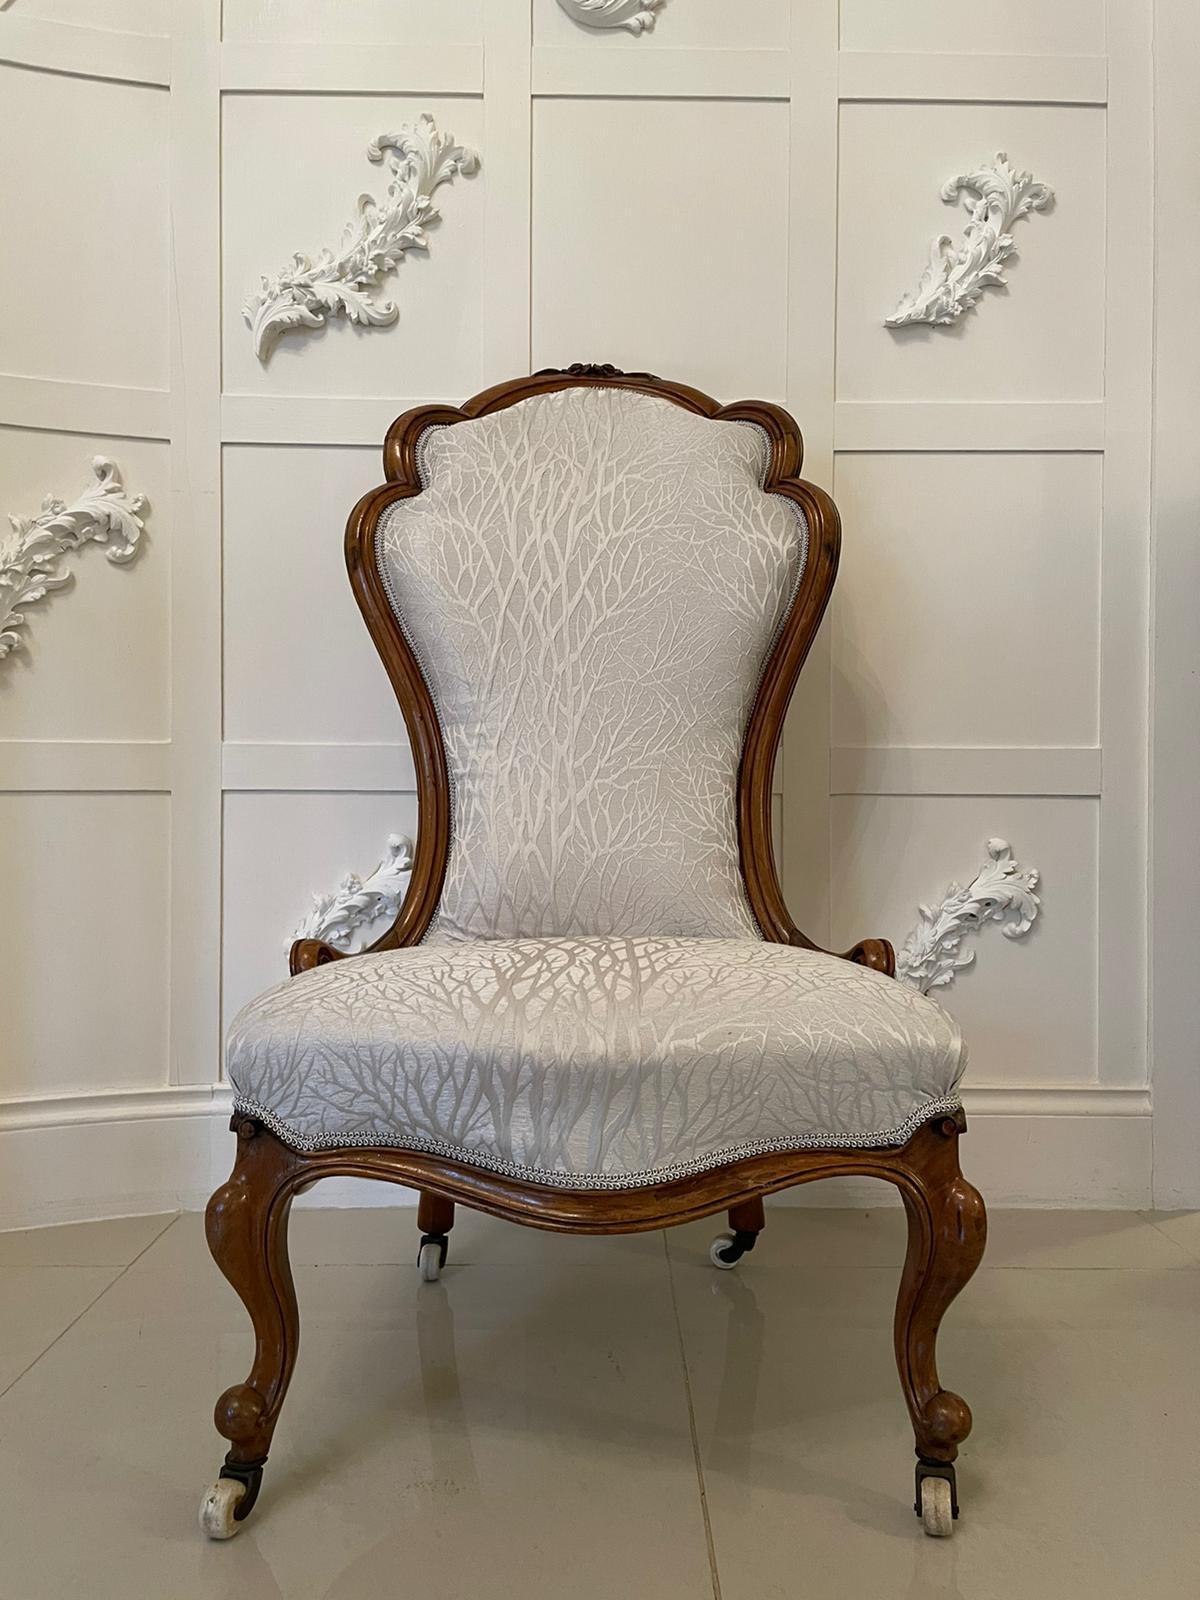 Chaise de dame victorienne en noyer sculpté du 19e siècle, avec un dossier en noyer massif sculpté et festonné de belle qualité et un siège en forme de serpentin. Il repose sur de jolis pieds cabriole sculptés à l'avant et sur des pieds arrière